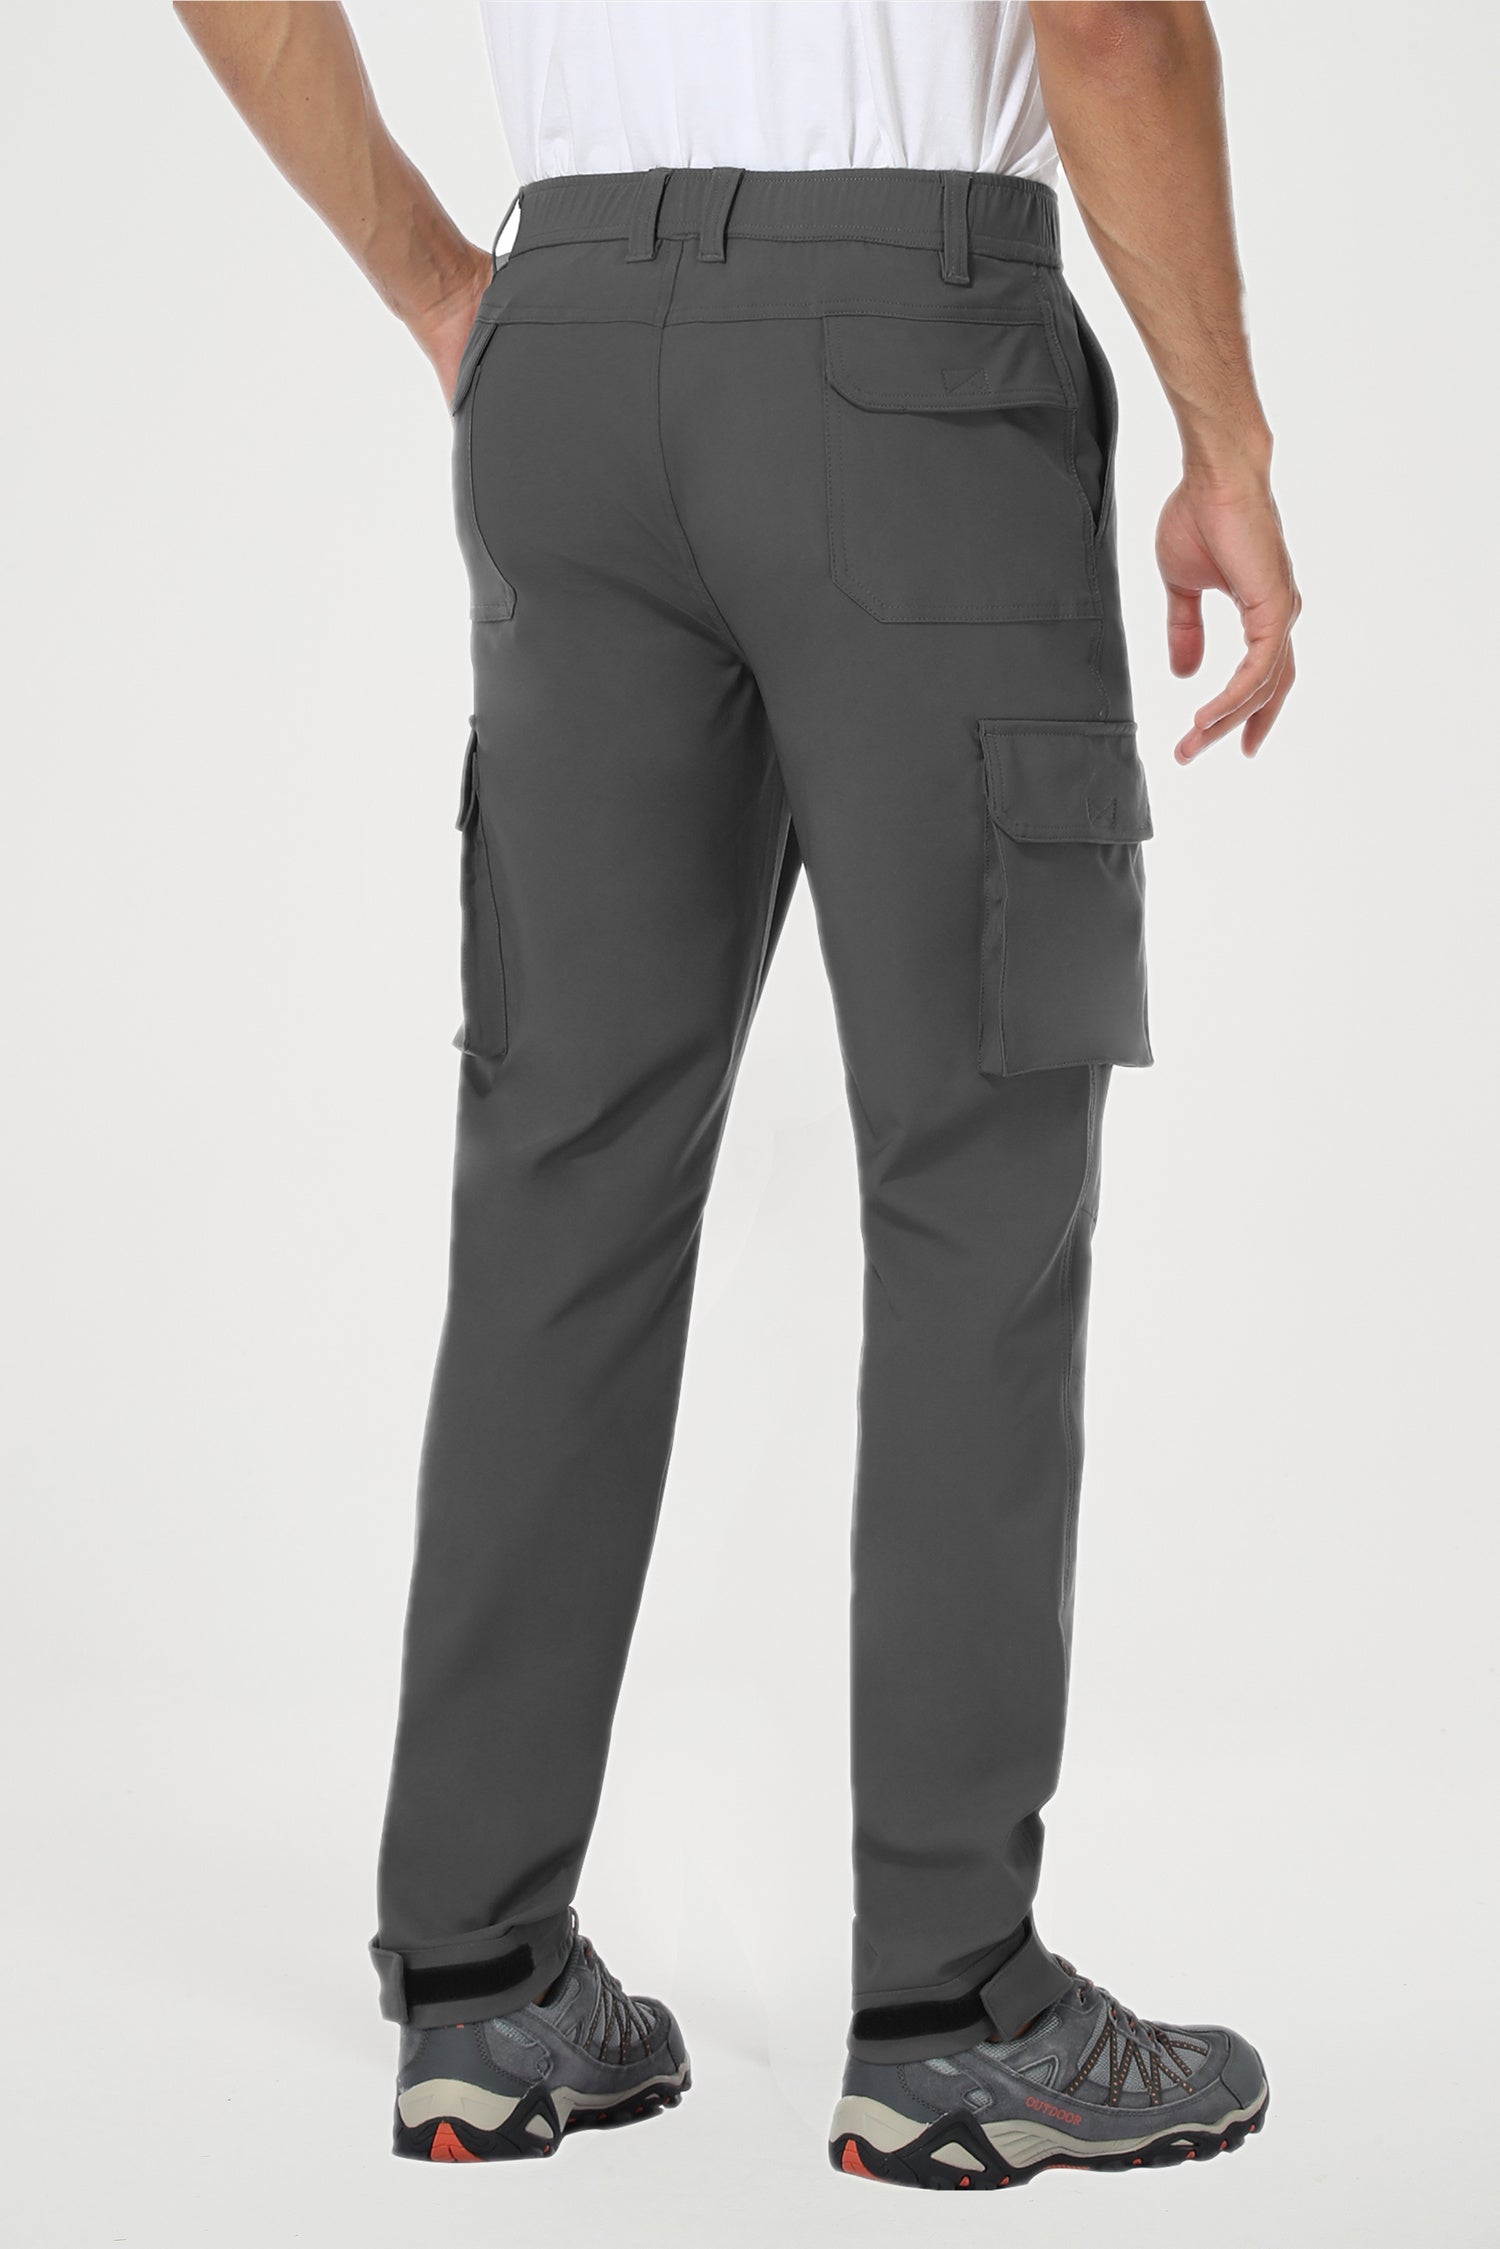 Men's Tactical Pants Water Resistant Military Cargo Pants Lightweight Hiking  Work Pants Outdoor Waterproof Quick Dry Tactical Pants - Walmart.com